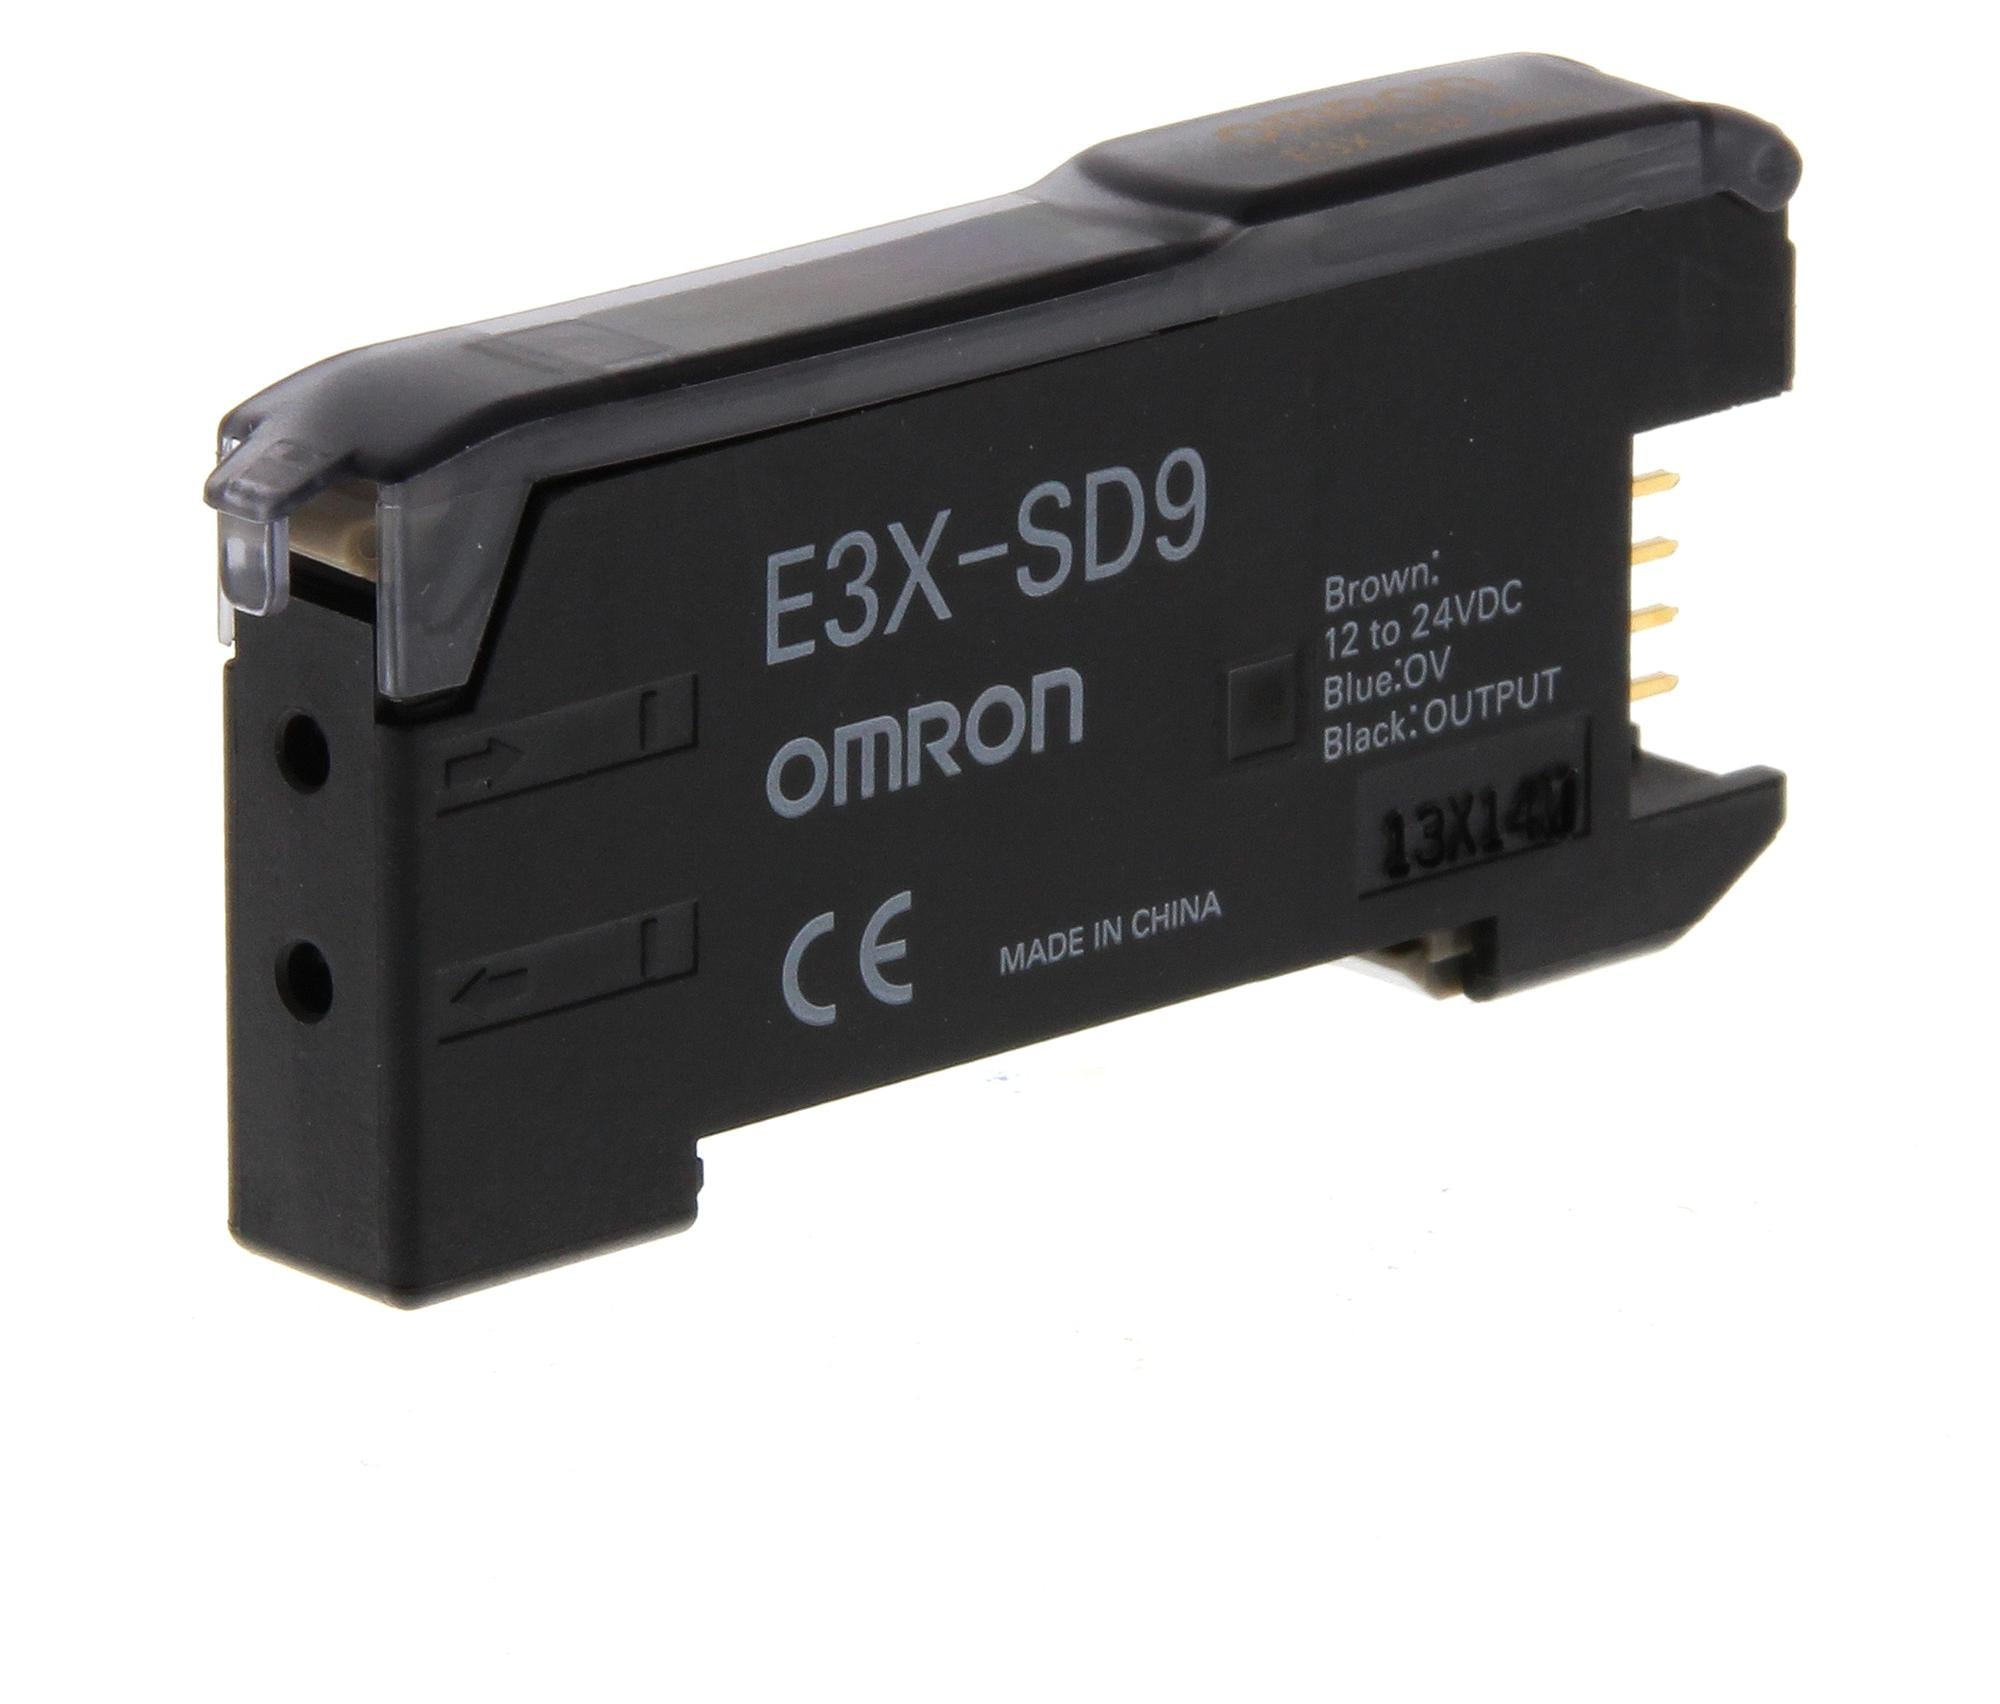 E3X-SD9 FIBRE OPTIC OMRON